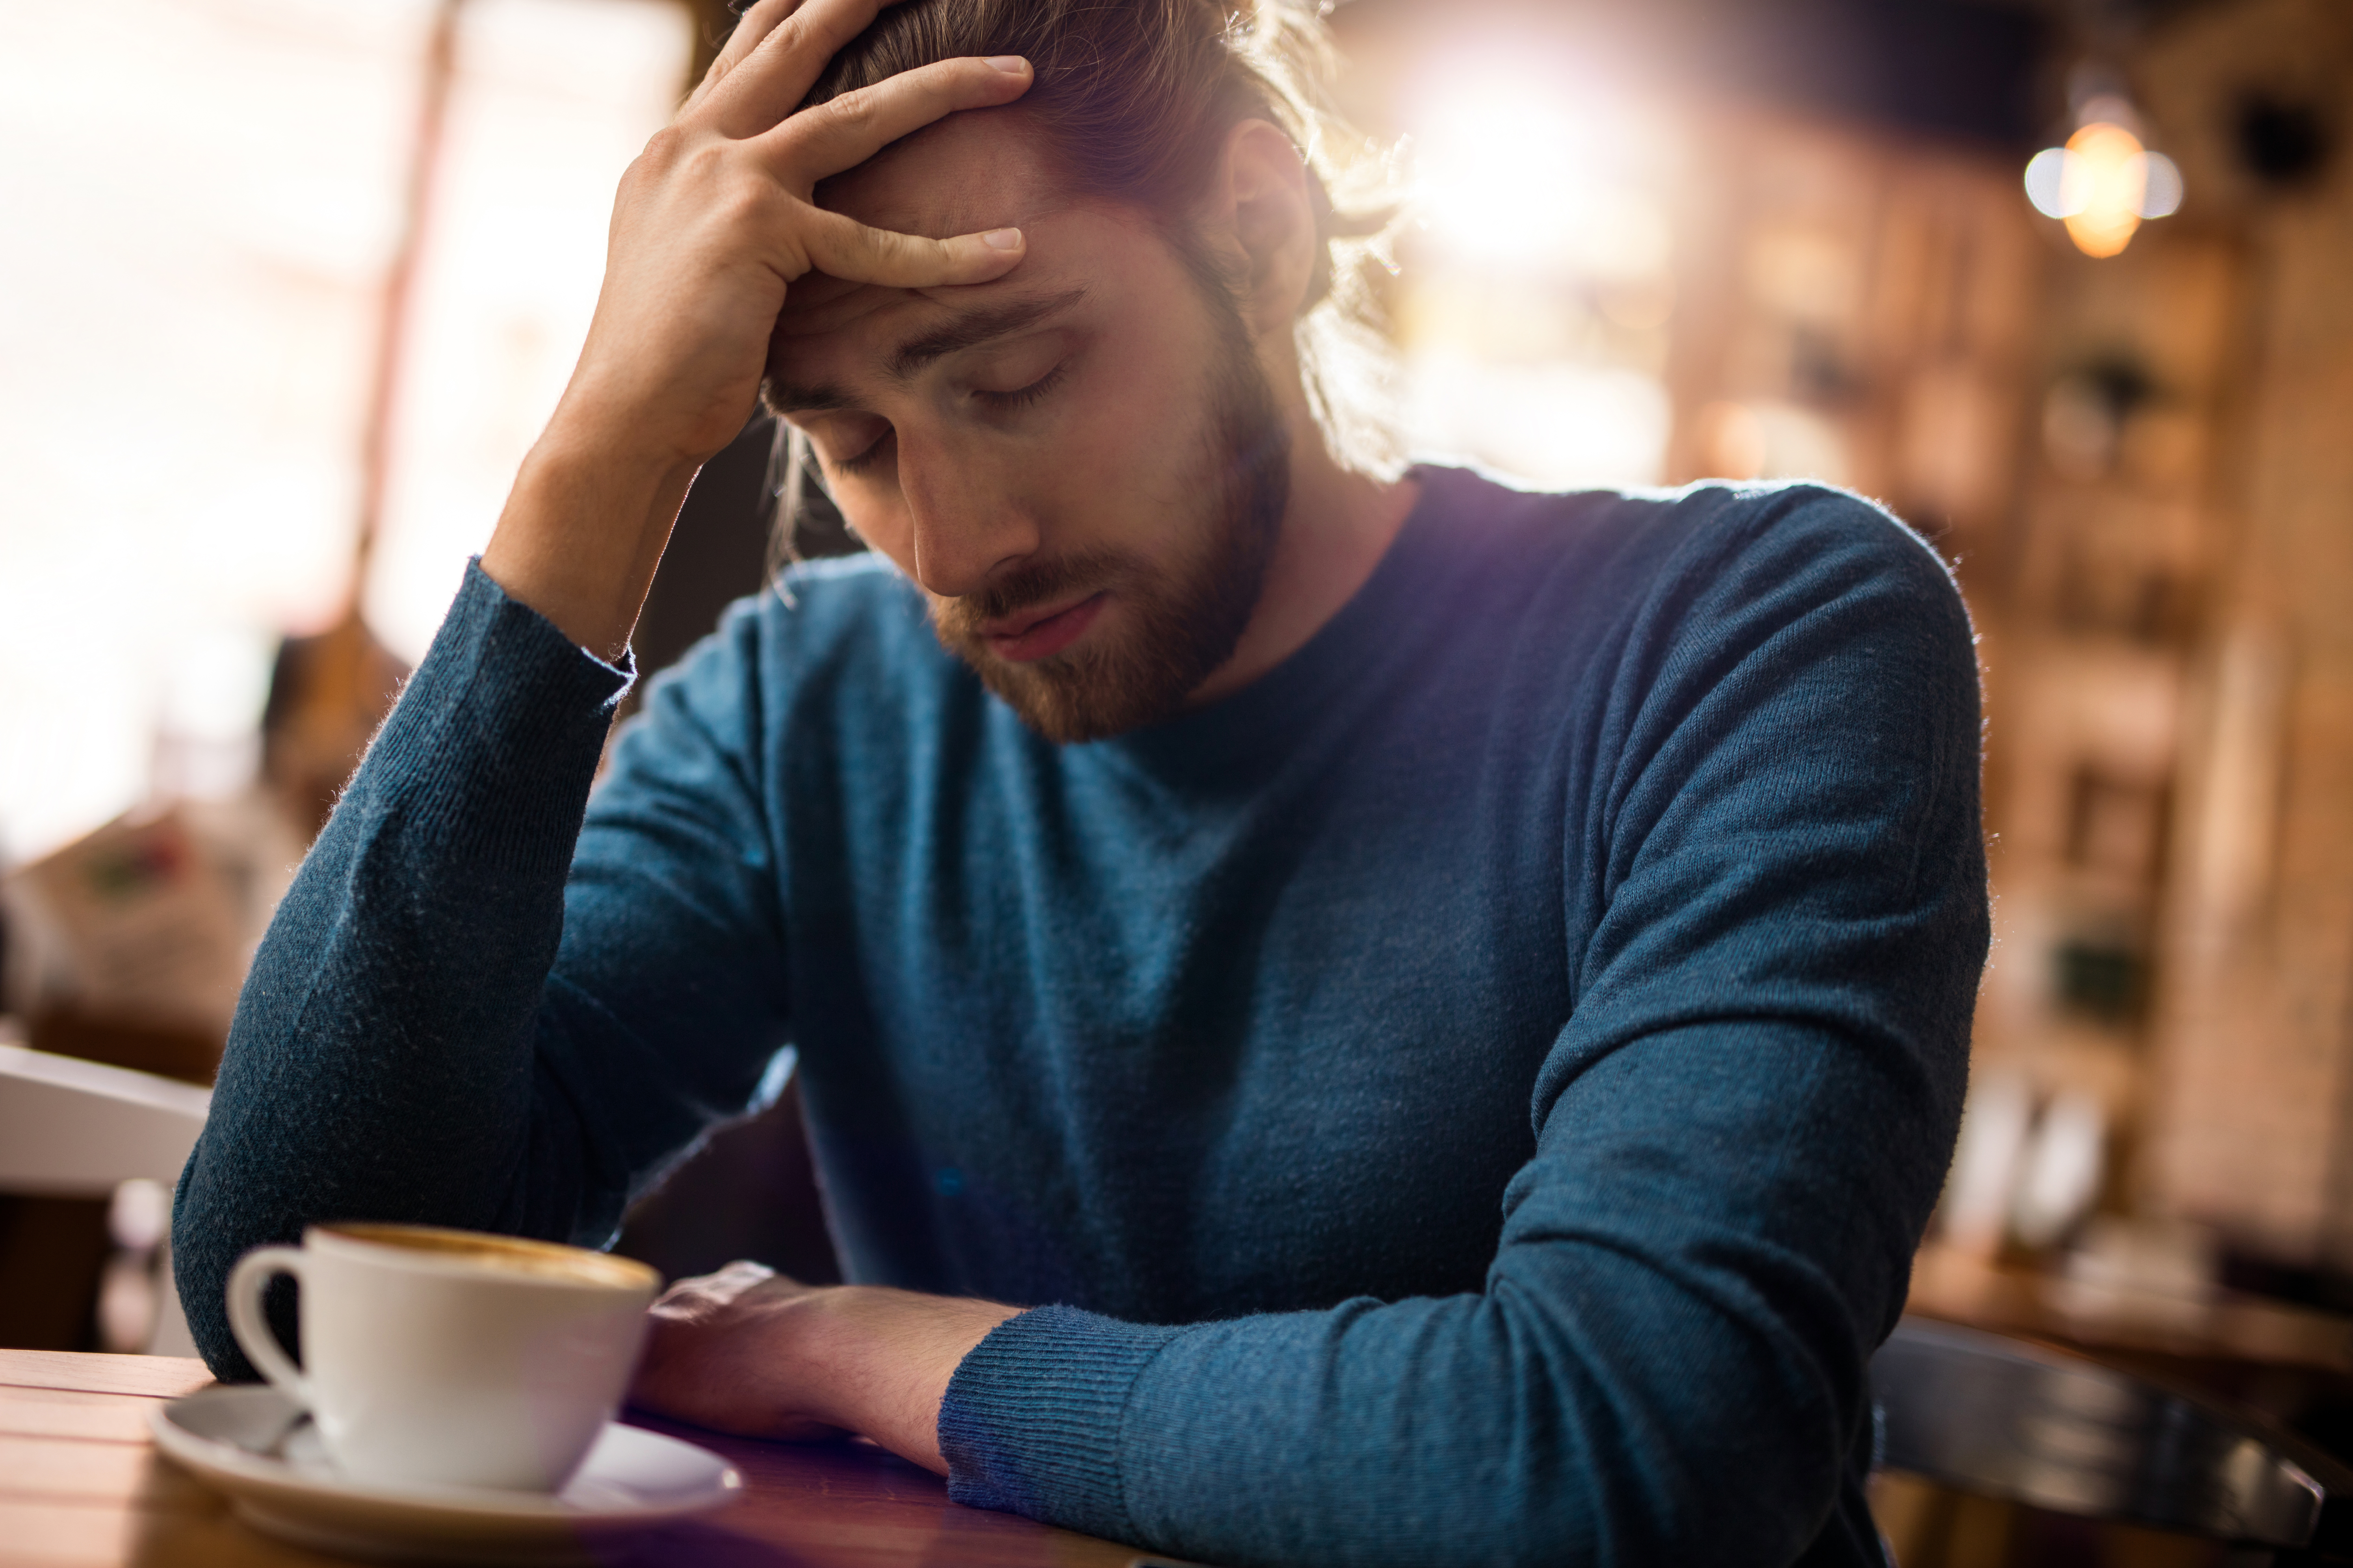 Homme stressé se tenant la tête de douleur dans un café | Source : Getty Images